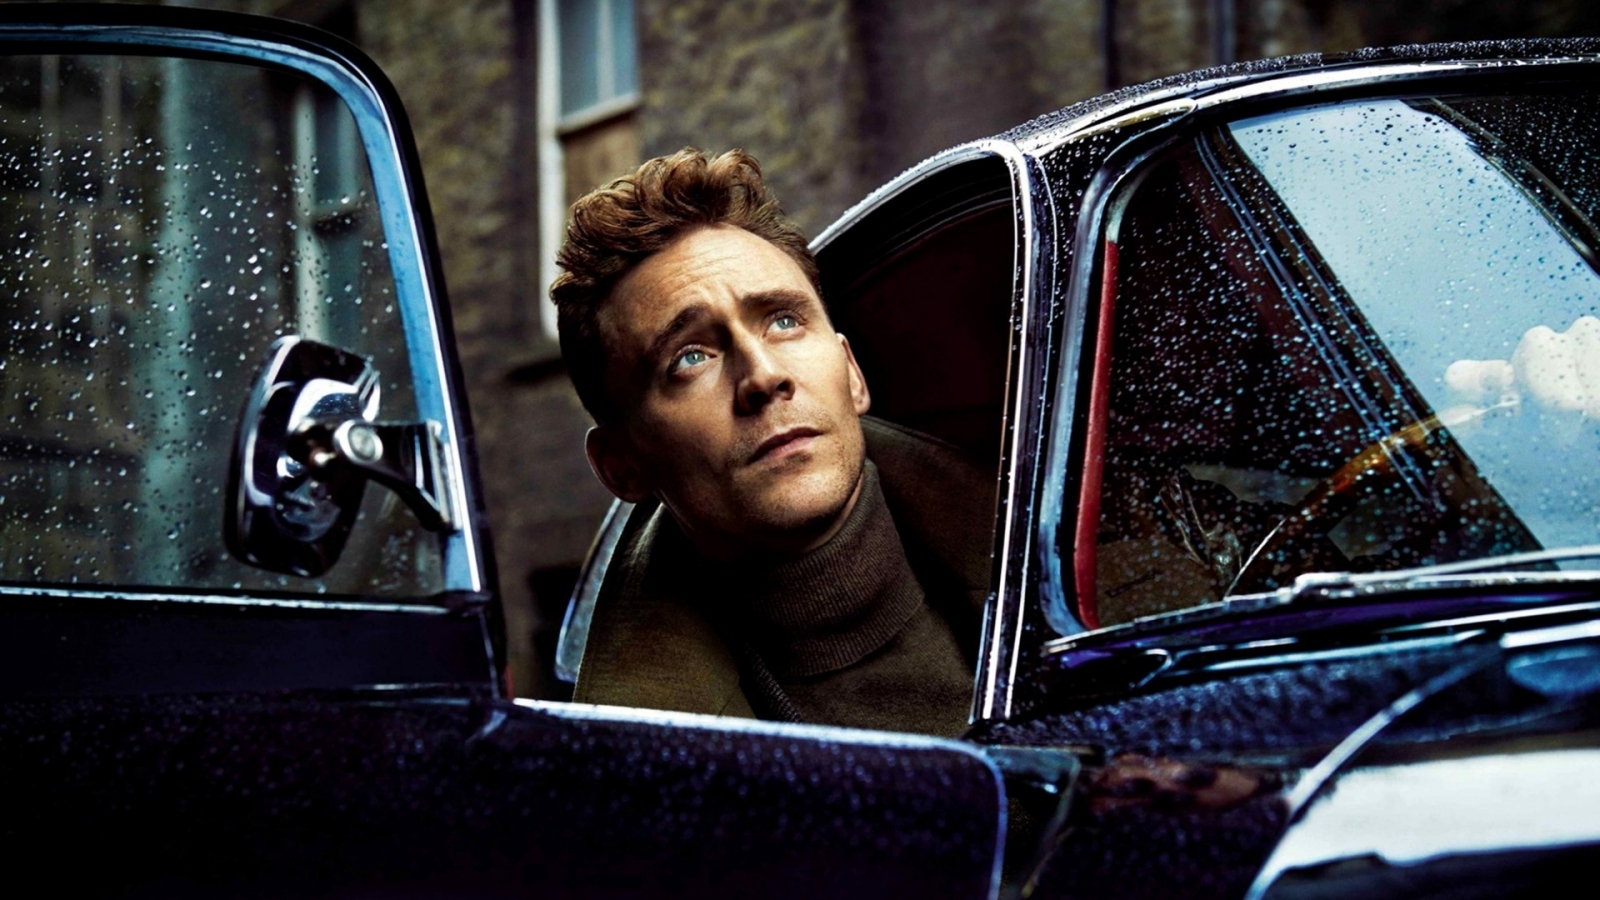 Tom Hiddleston Poster for 1600 x 900 HDTV resolution